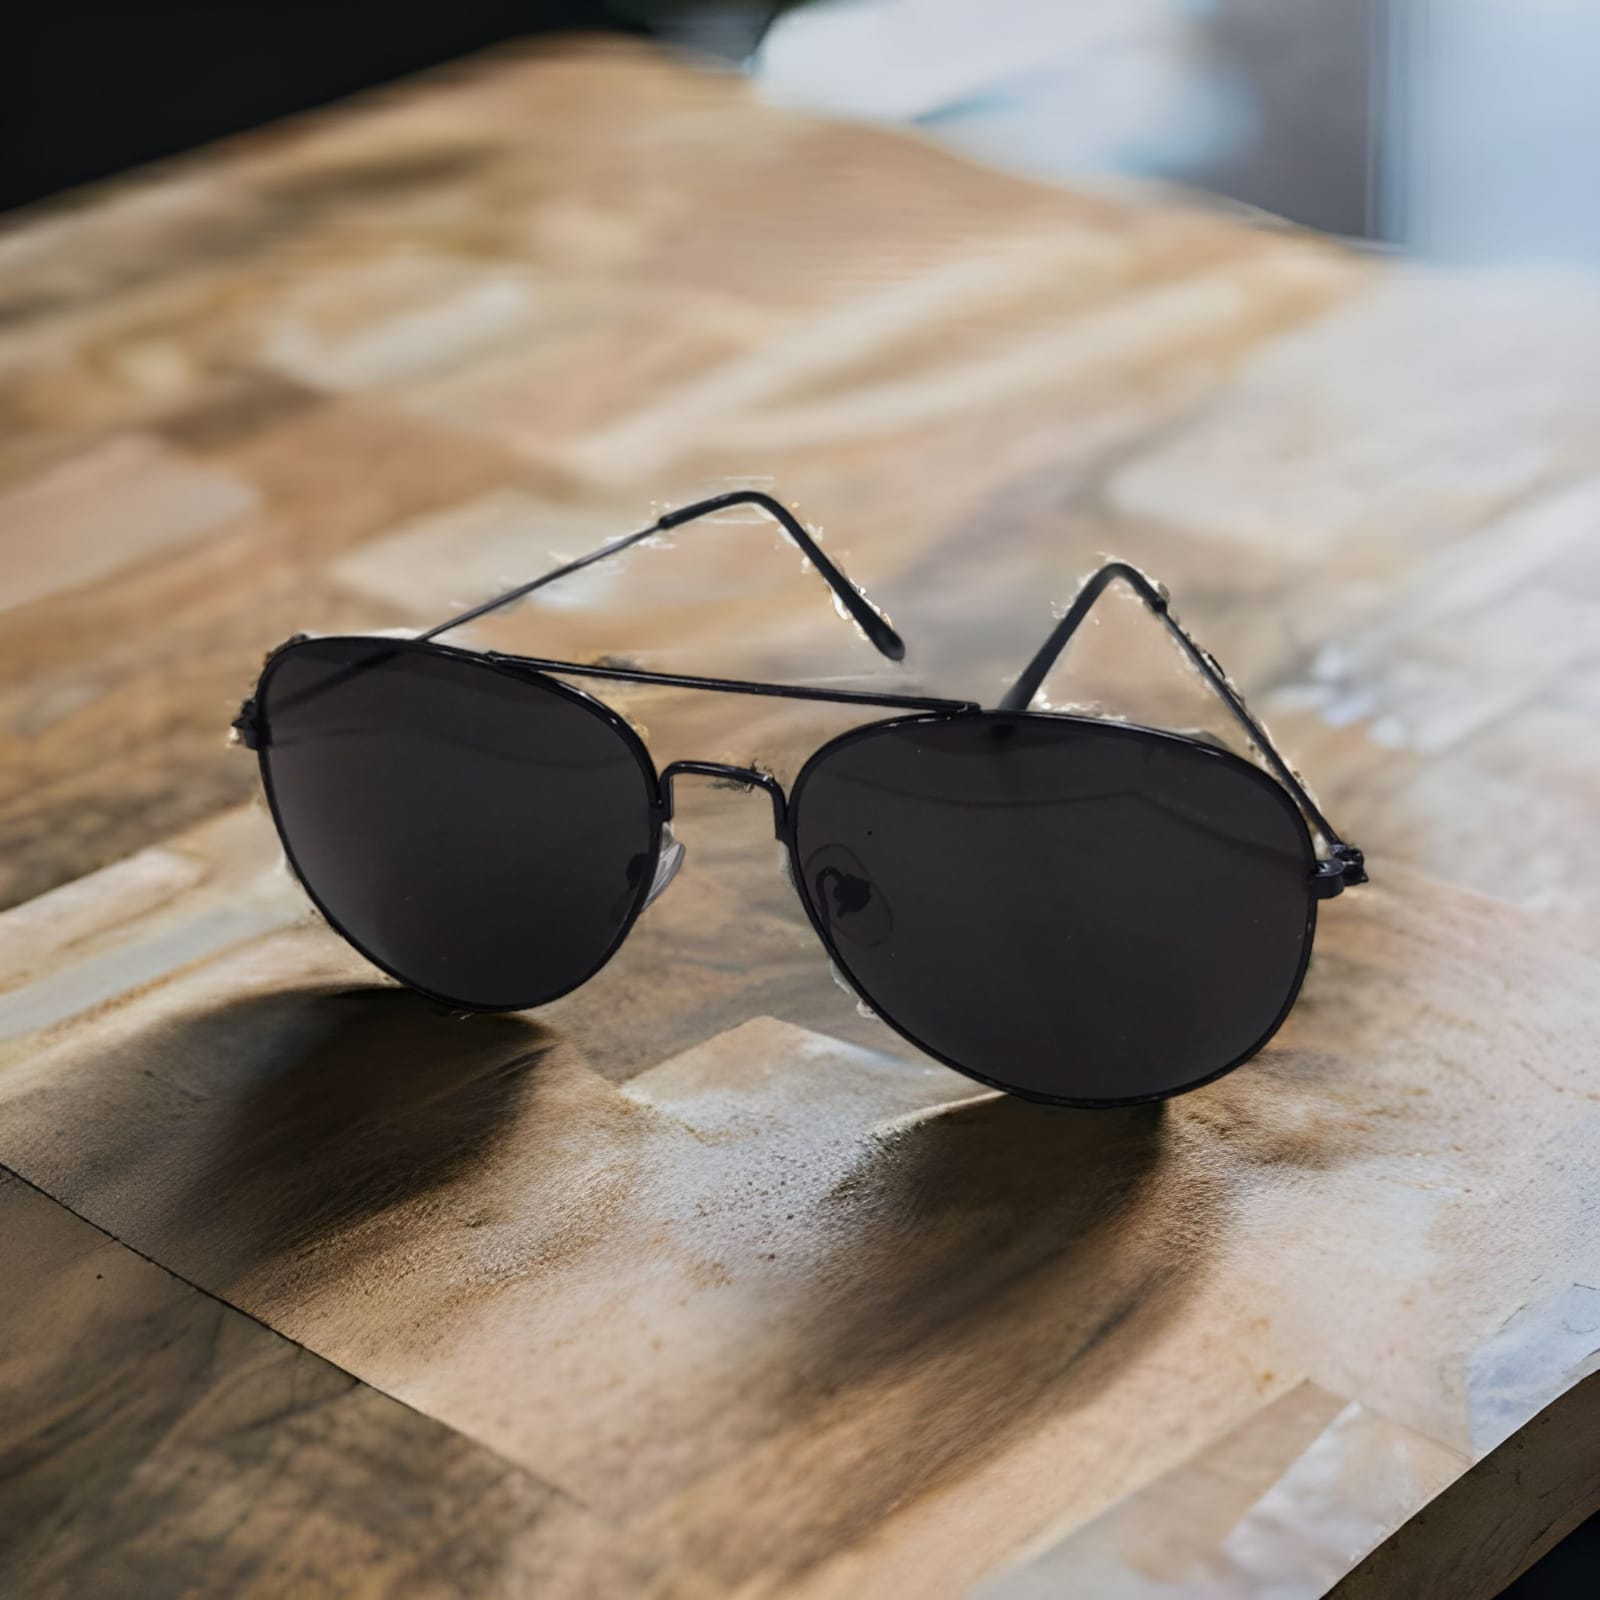  Sunglasses lightweight Stylish Glasses for Men Women 